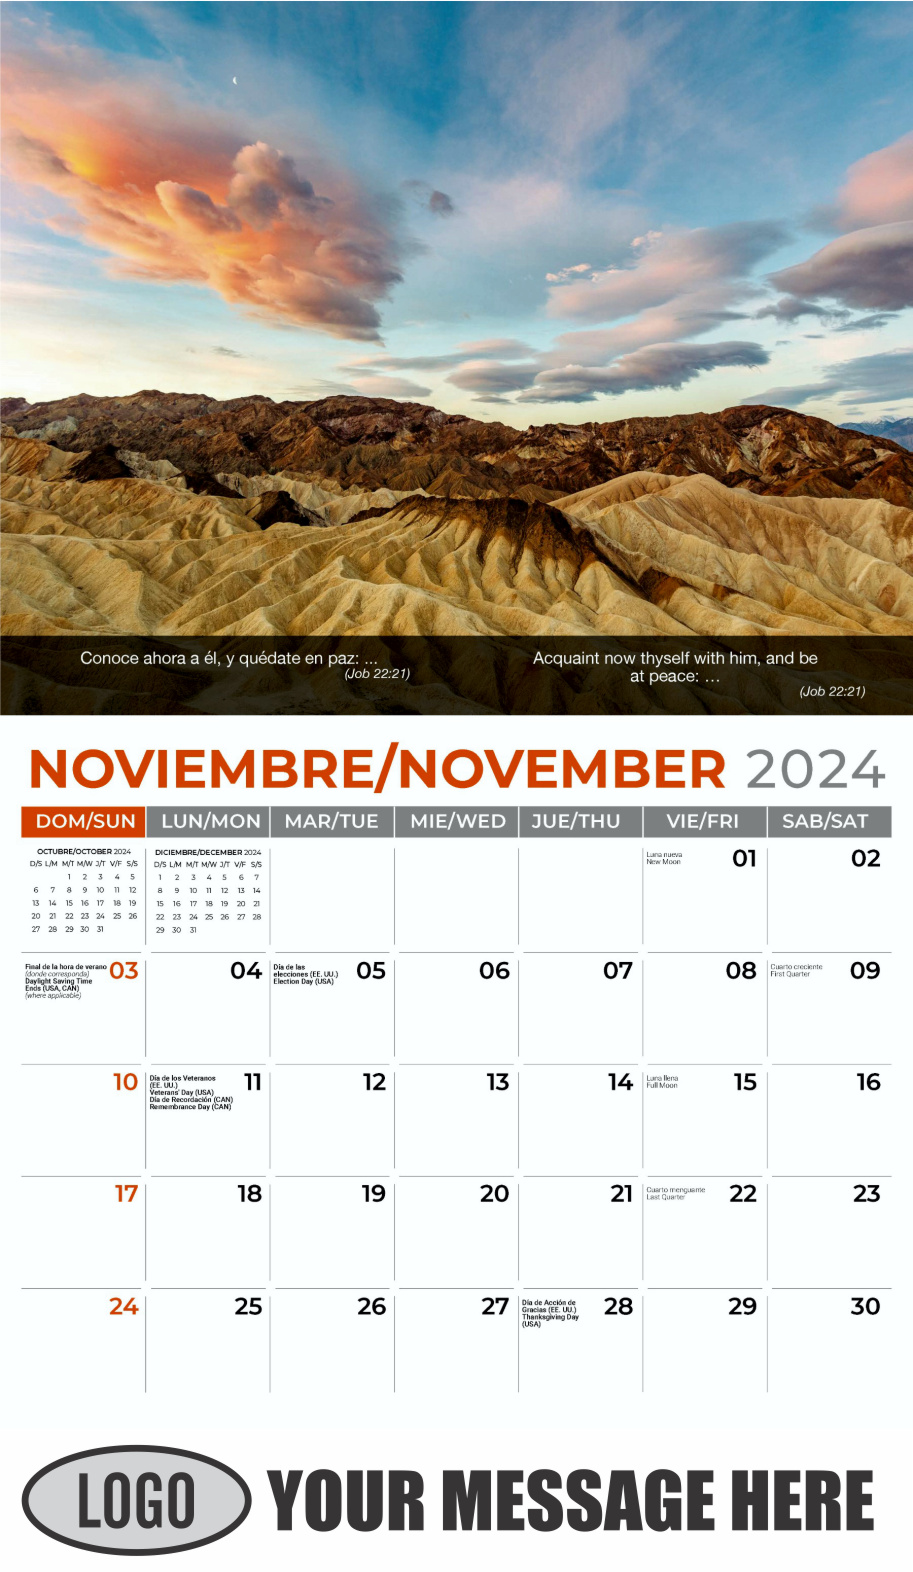 Faith Passages 2024 Bilingual Christian Faith Business Promotional Calendar - November